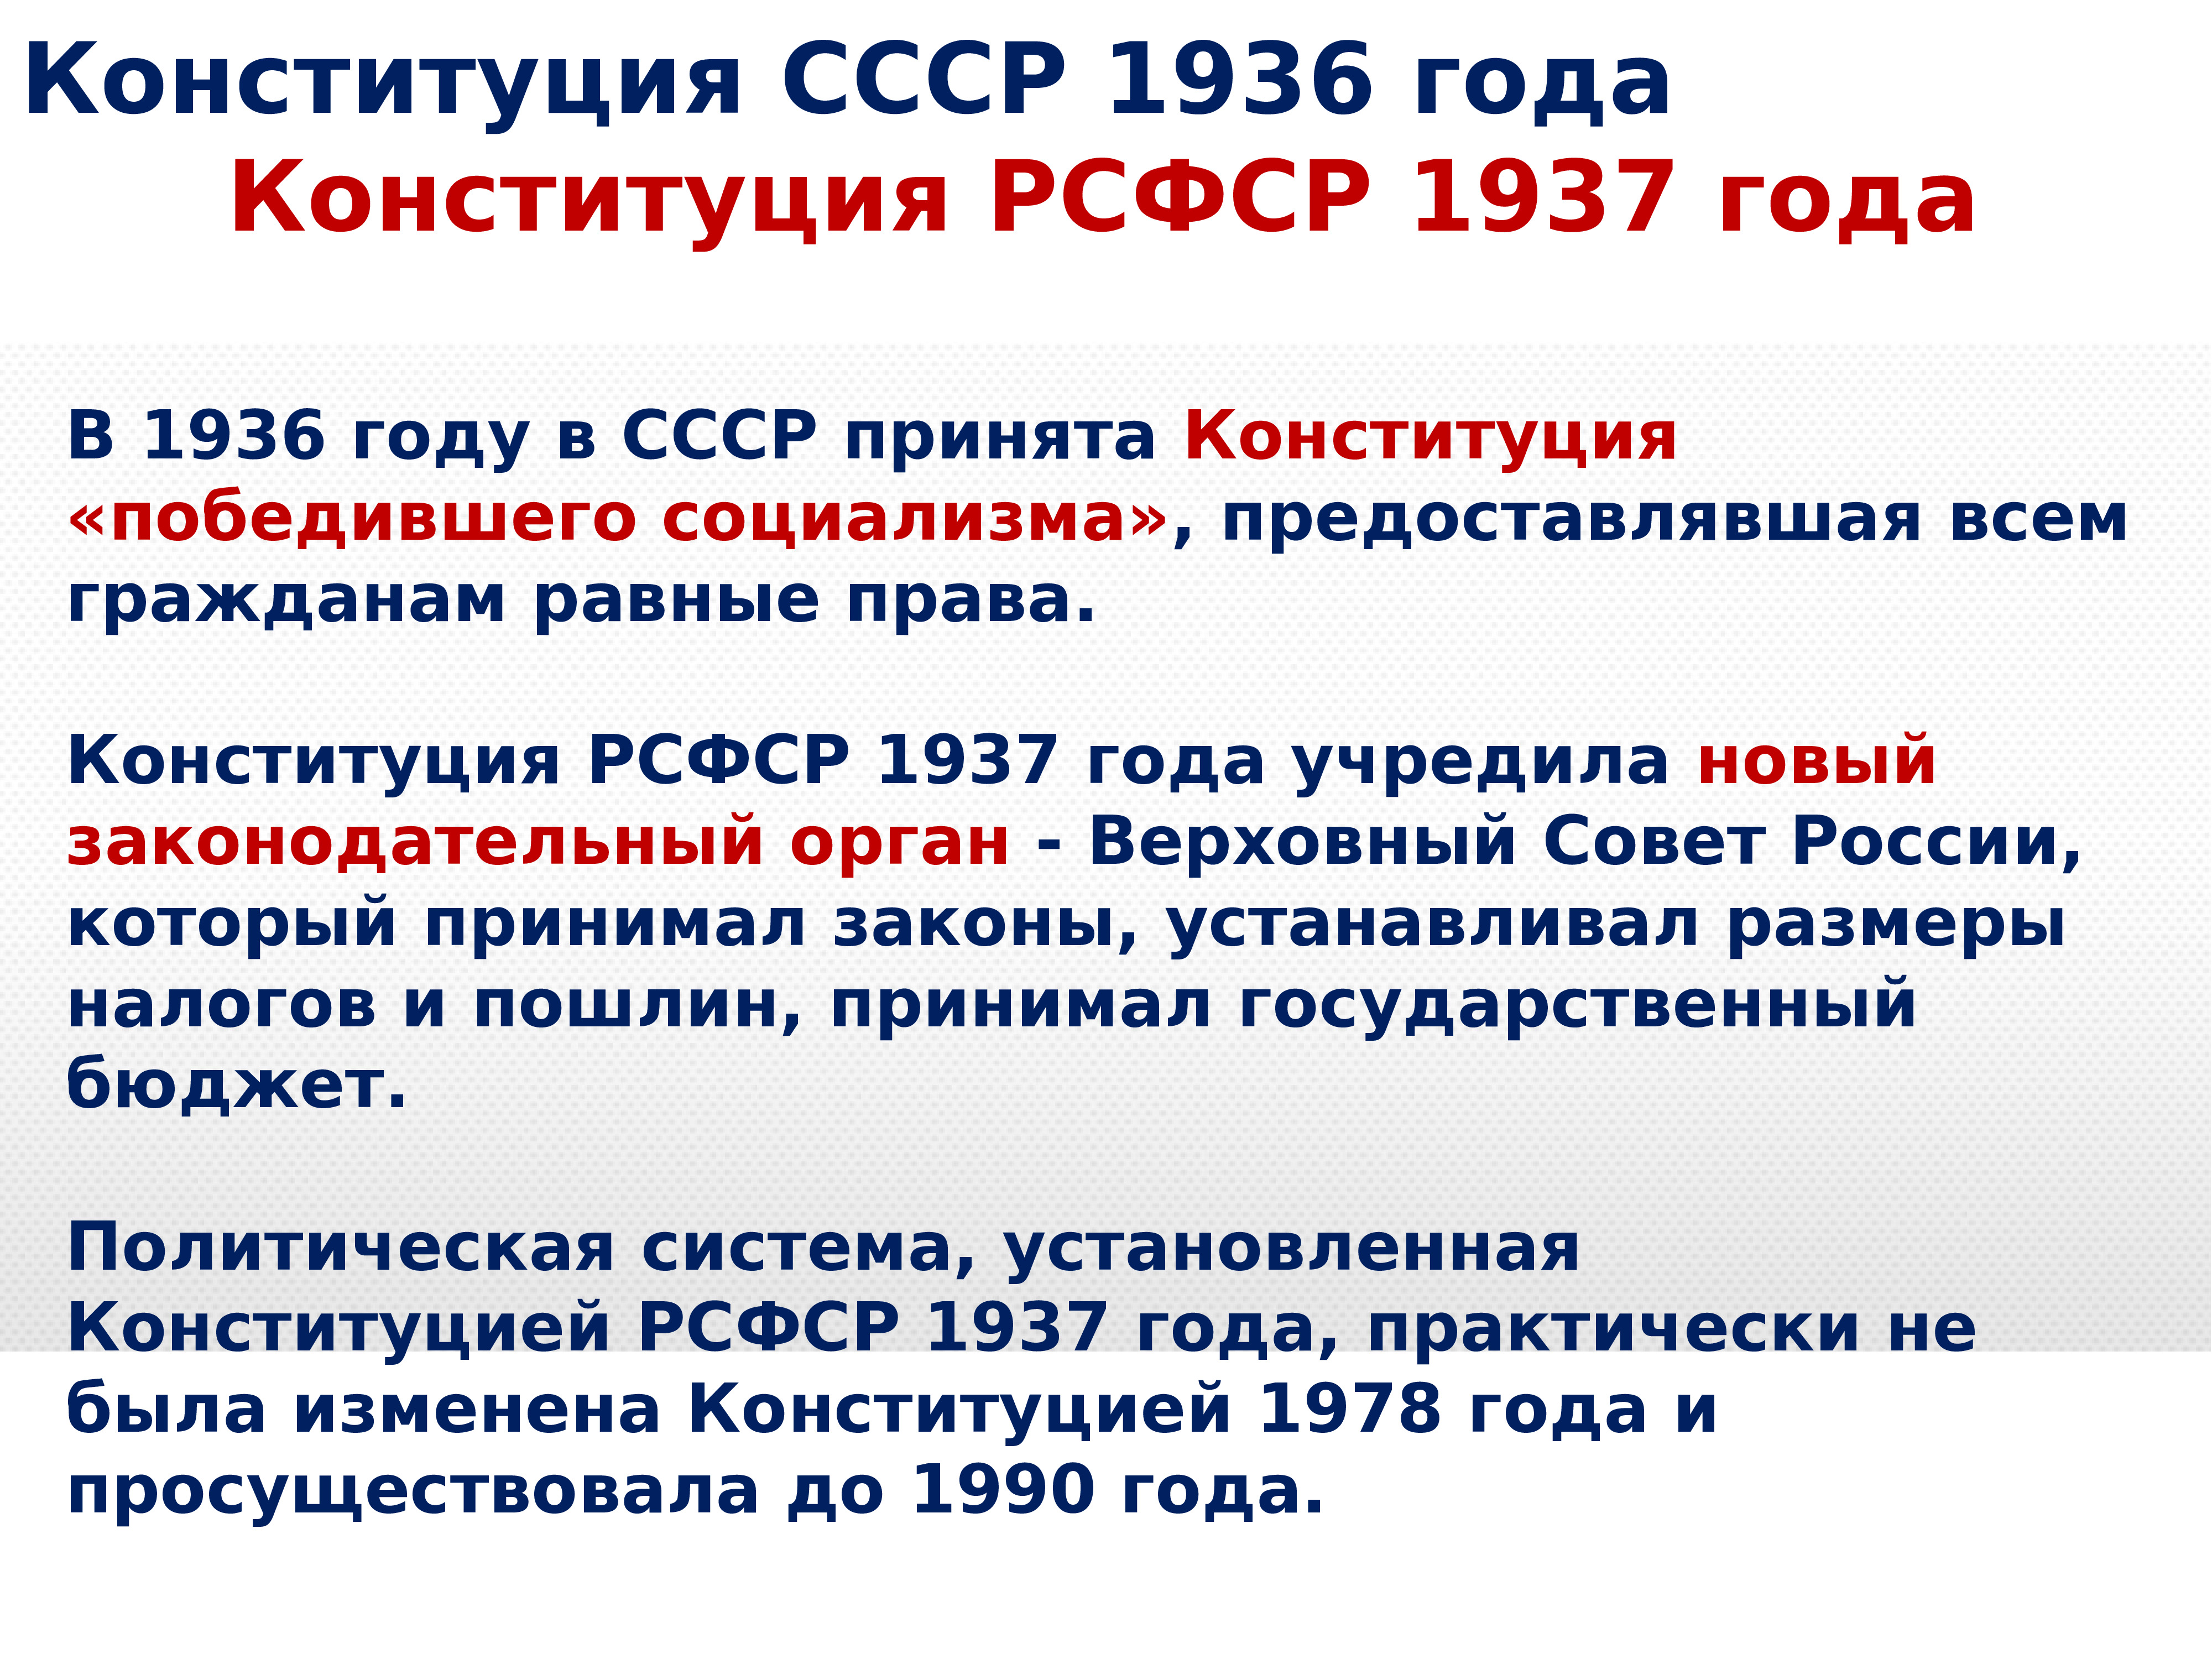 П 4 ст 15 конституции. Конституция РФ 1993. 15 Статья Конституции.